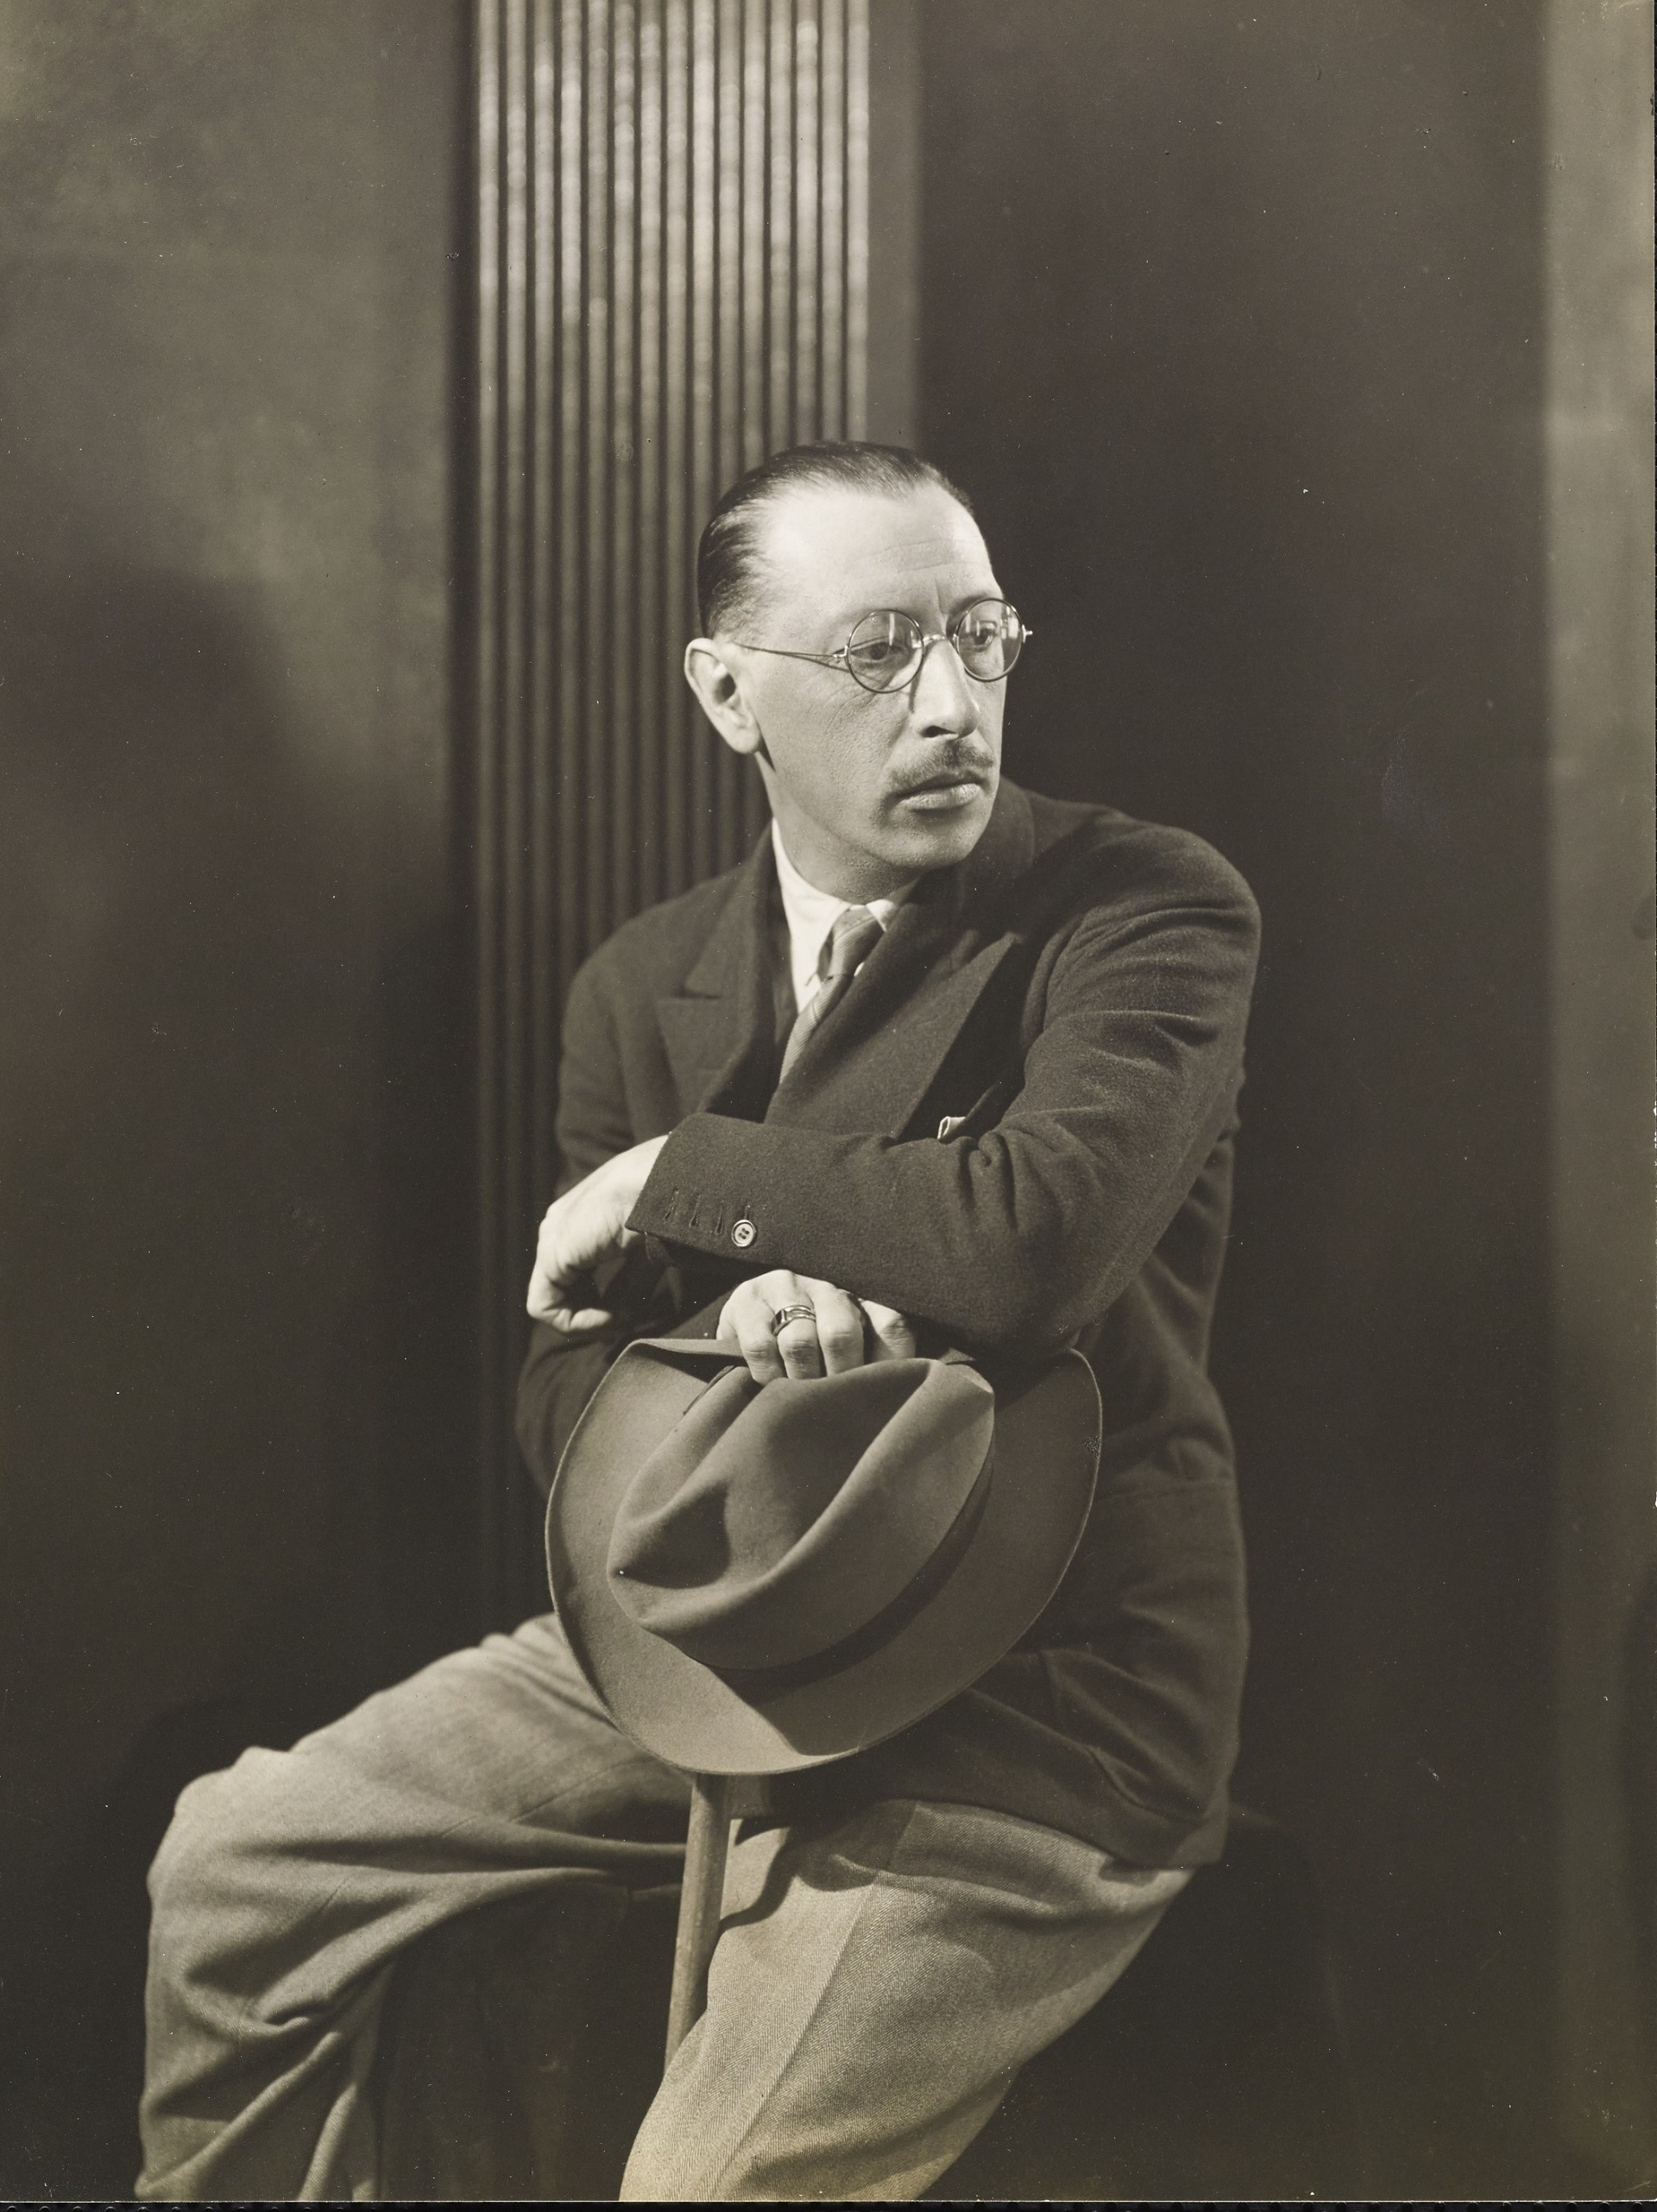 George Hoyningen-Huene, Igor Stravinsky seduto con il cappello in mano, 1927, Vanity Fair © Condé Nast